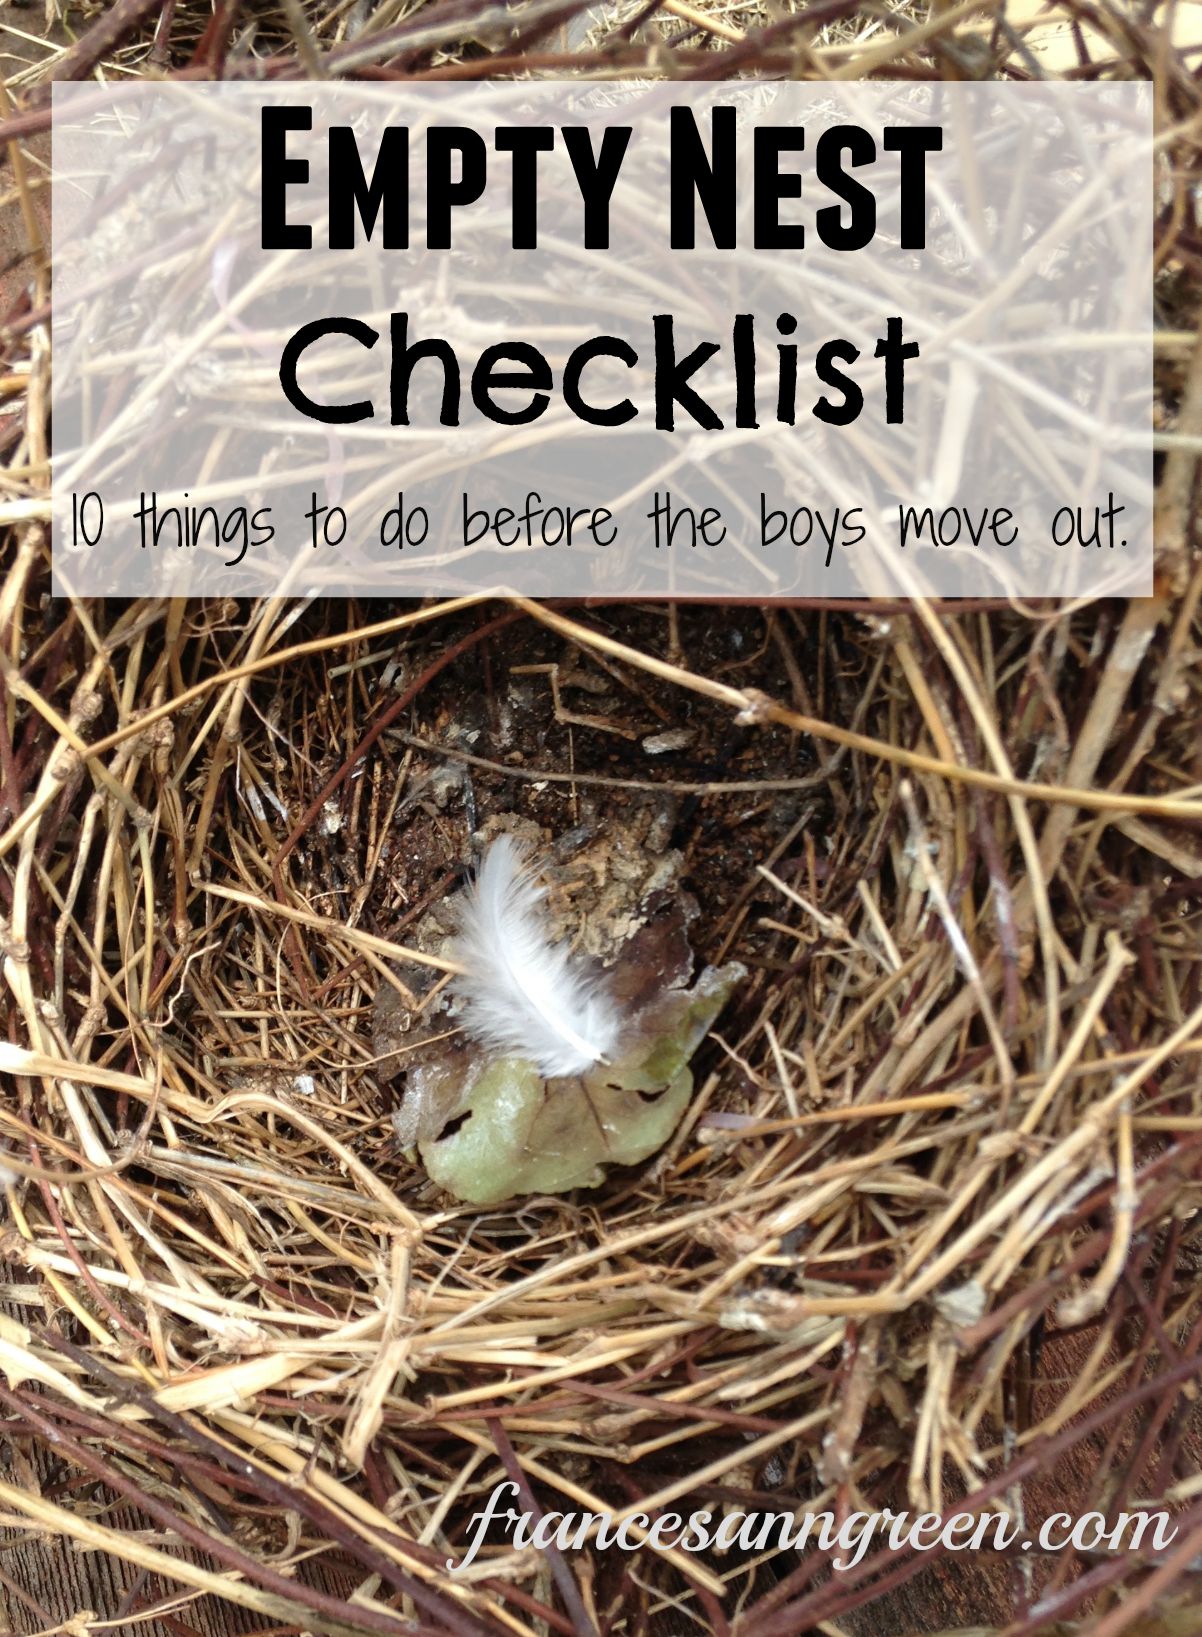 Empty nest checklist